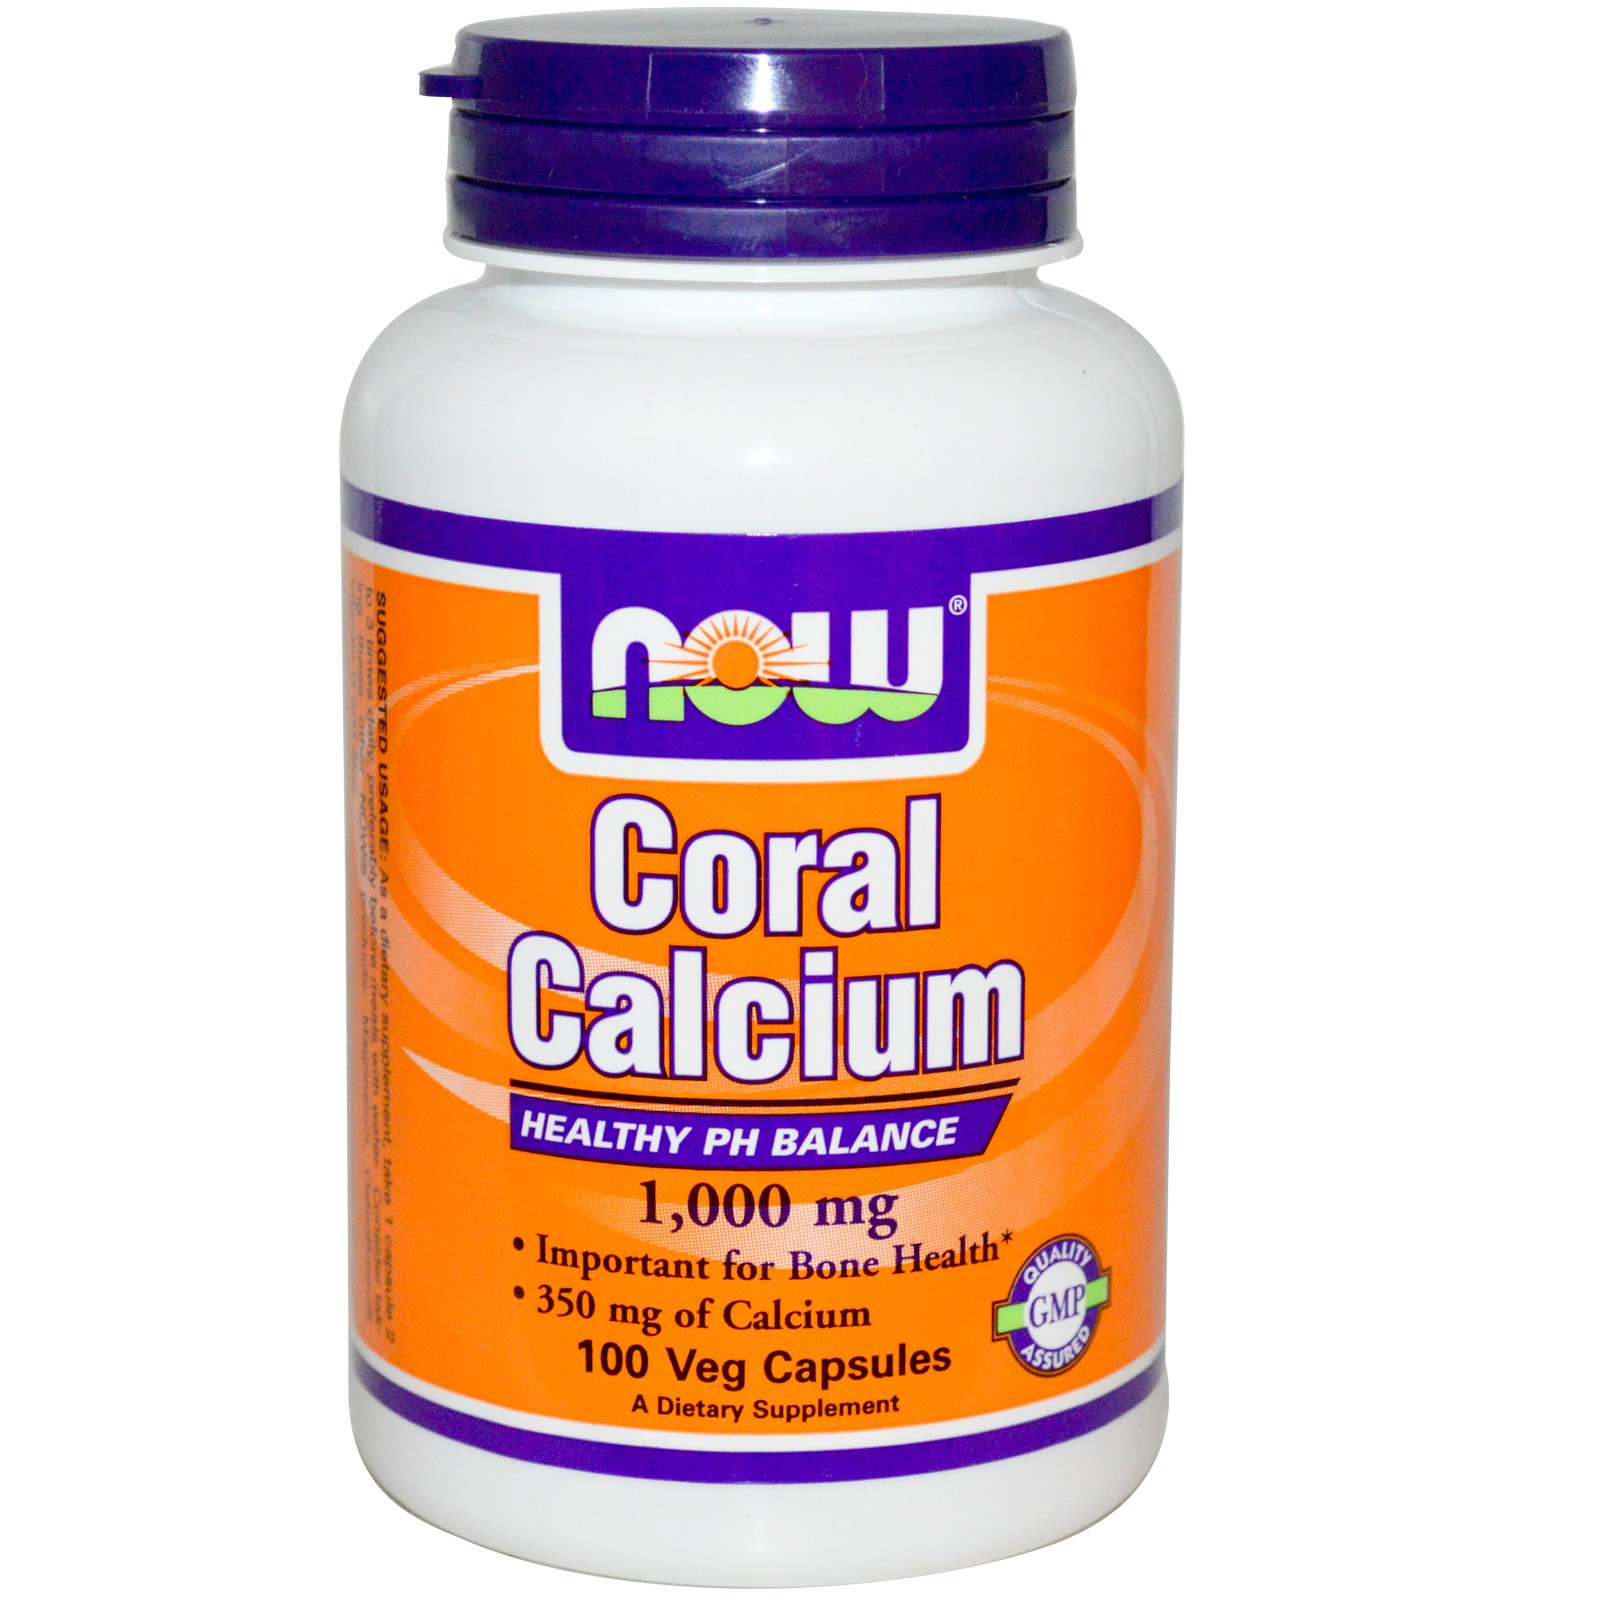 Coral Calcium 1,000 mg - 100 Veg Capsules